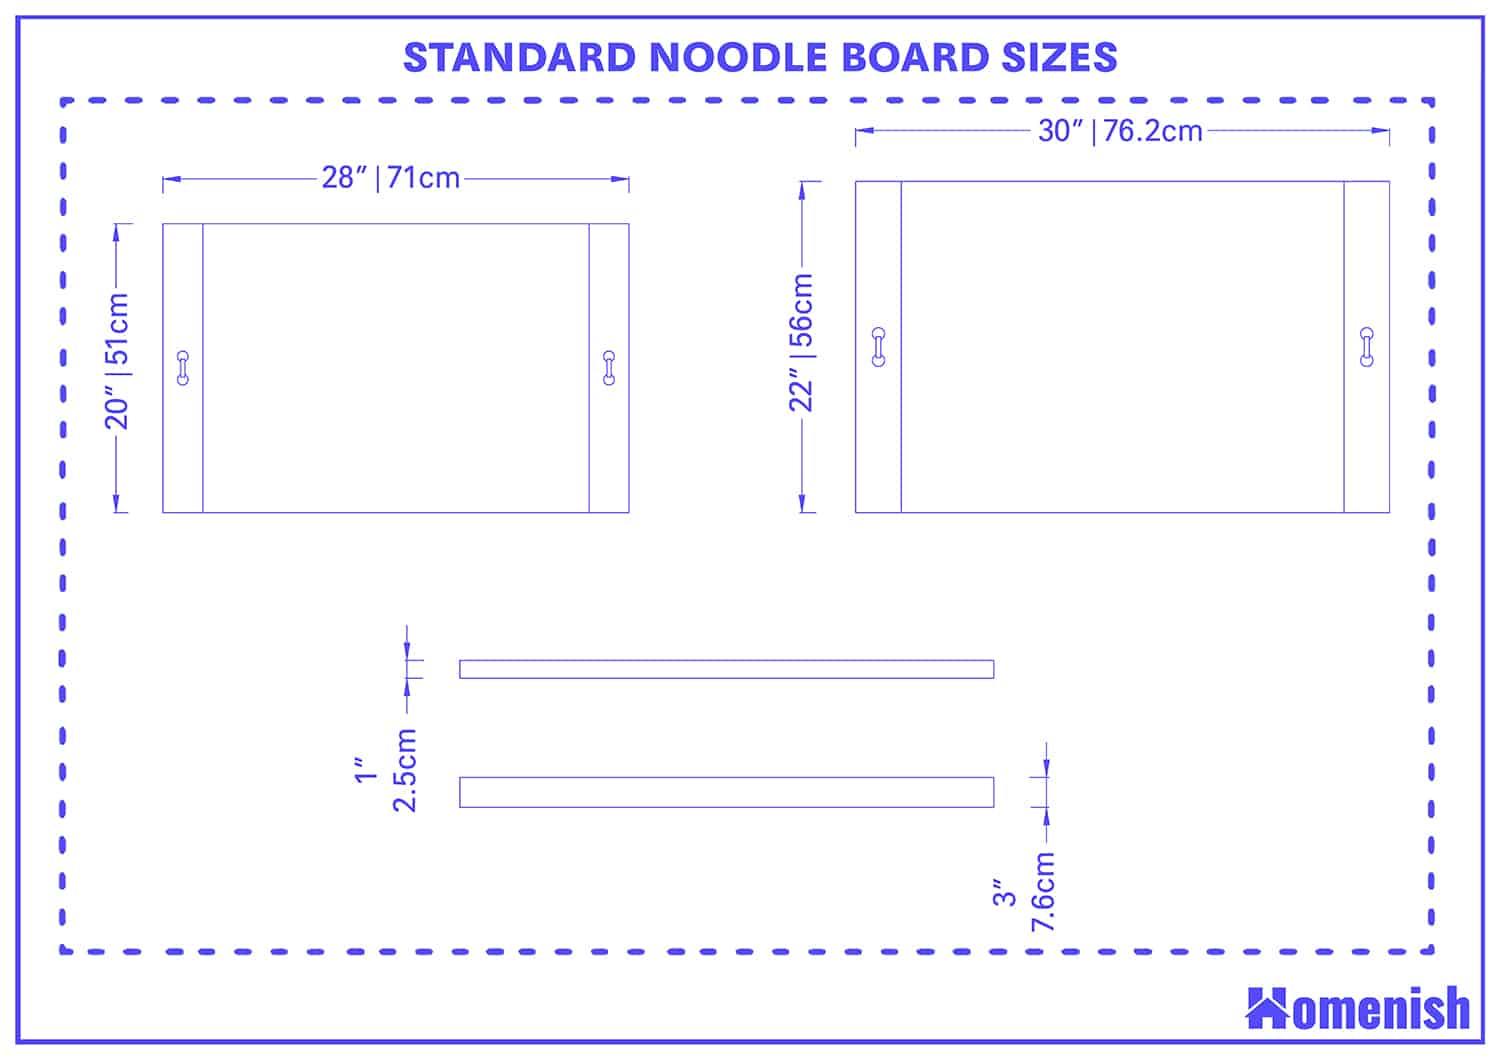 Standard Noodle Board Sizes